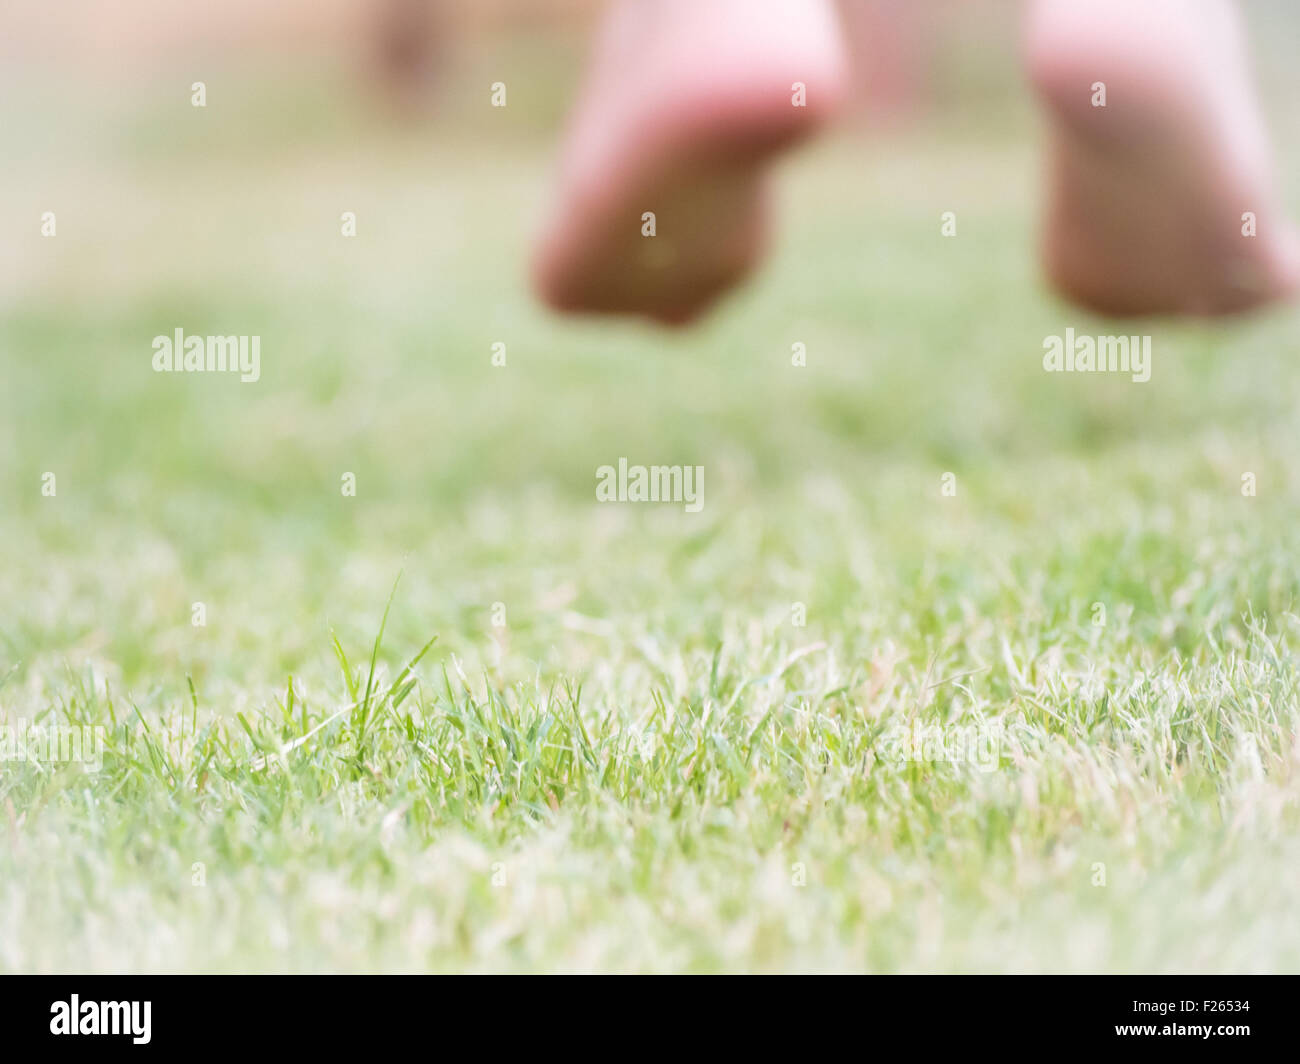 springen Sie auf dem Rasen nach dem Glück. Bild mit Füßen von Kid, die direkt auf dem Rasen zu verwischen. Konzept des Glücks Stockfoto